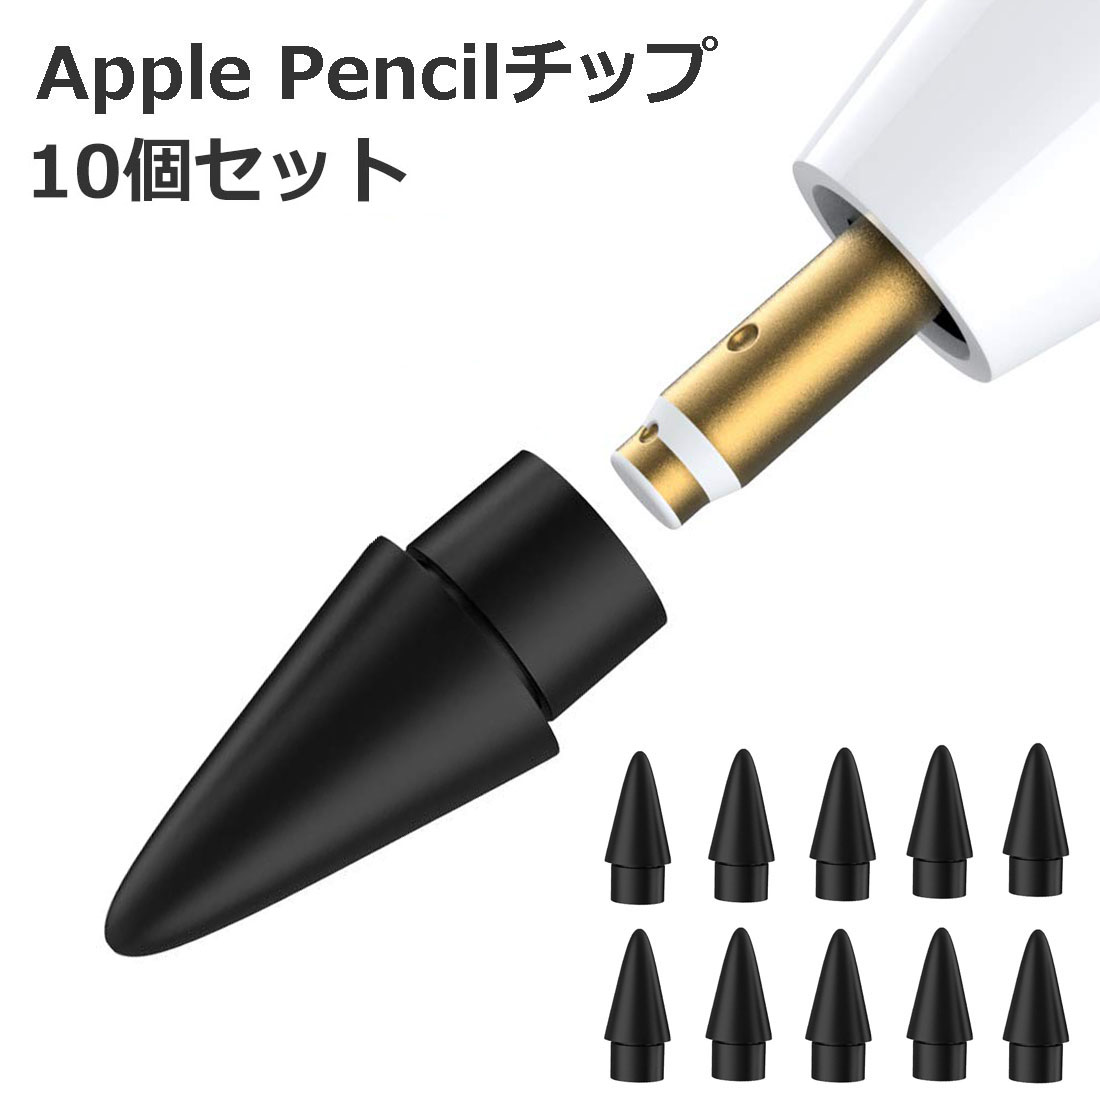 楽天市場 5個入 Apple Pencil チップ ペン先 アップルペンシル Appleペンシル キャップ 交換用 芯 Ipad Pro Mini 第一世代 第二世代 第1世代 第2世代 ホワイト 白 White Agenstar アジェンスター 楽天市場店